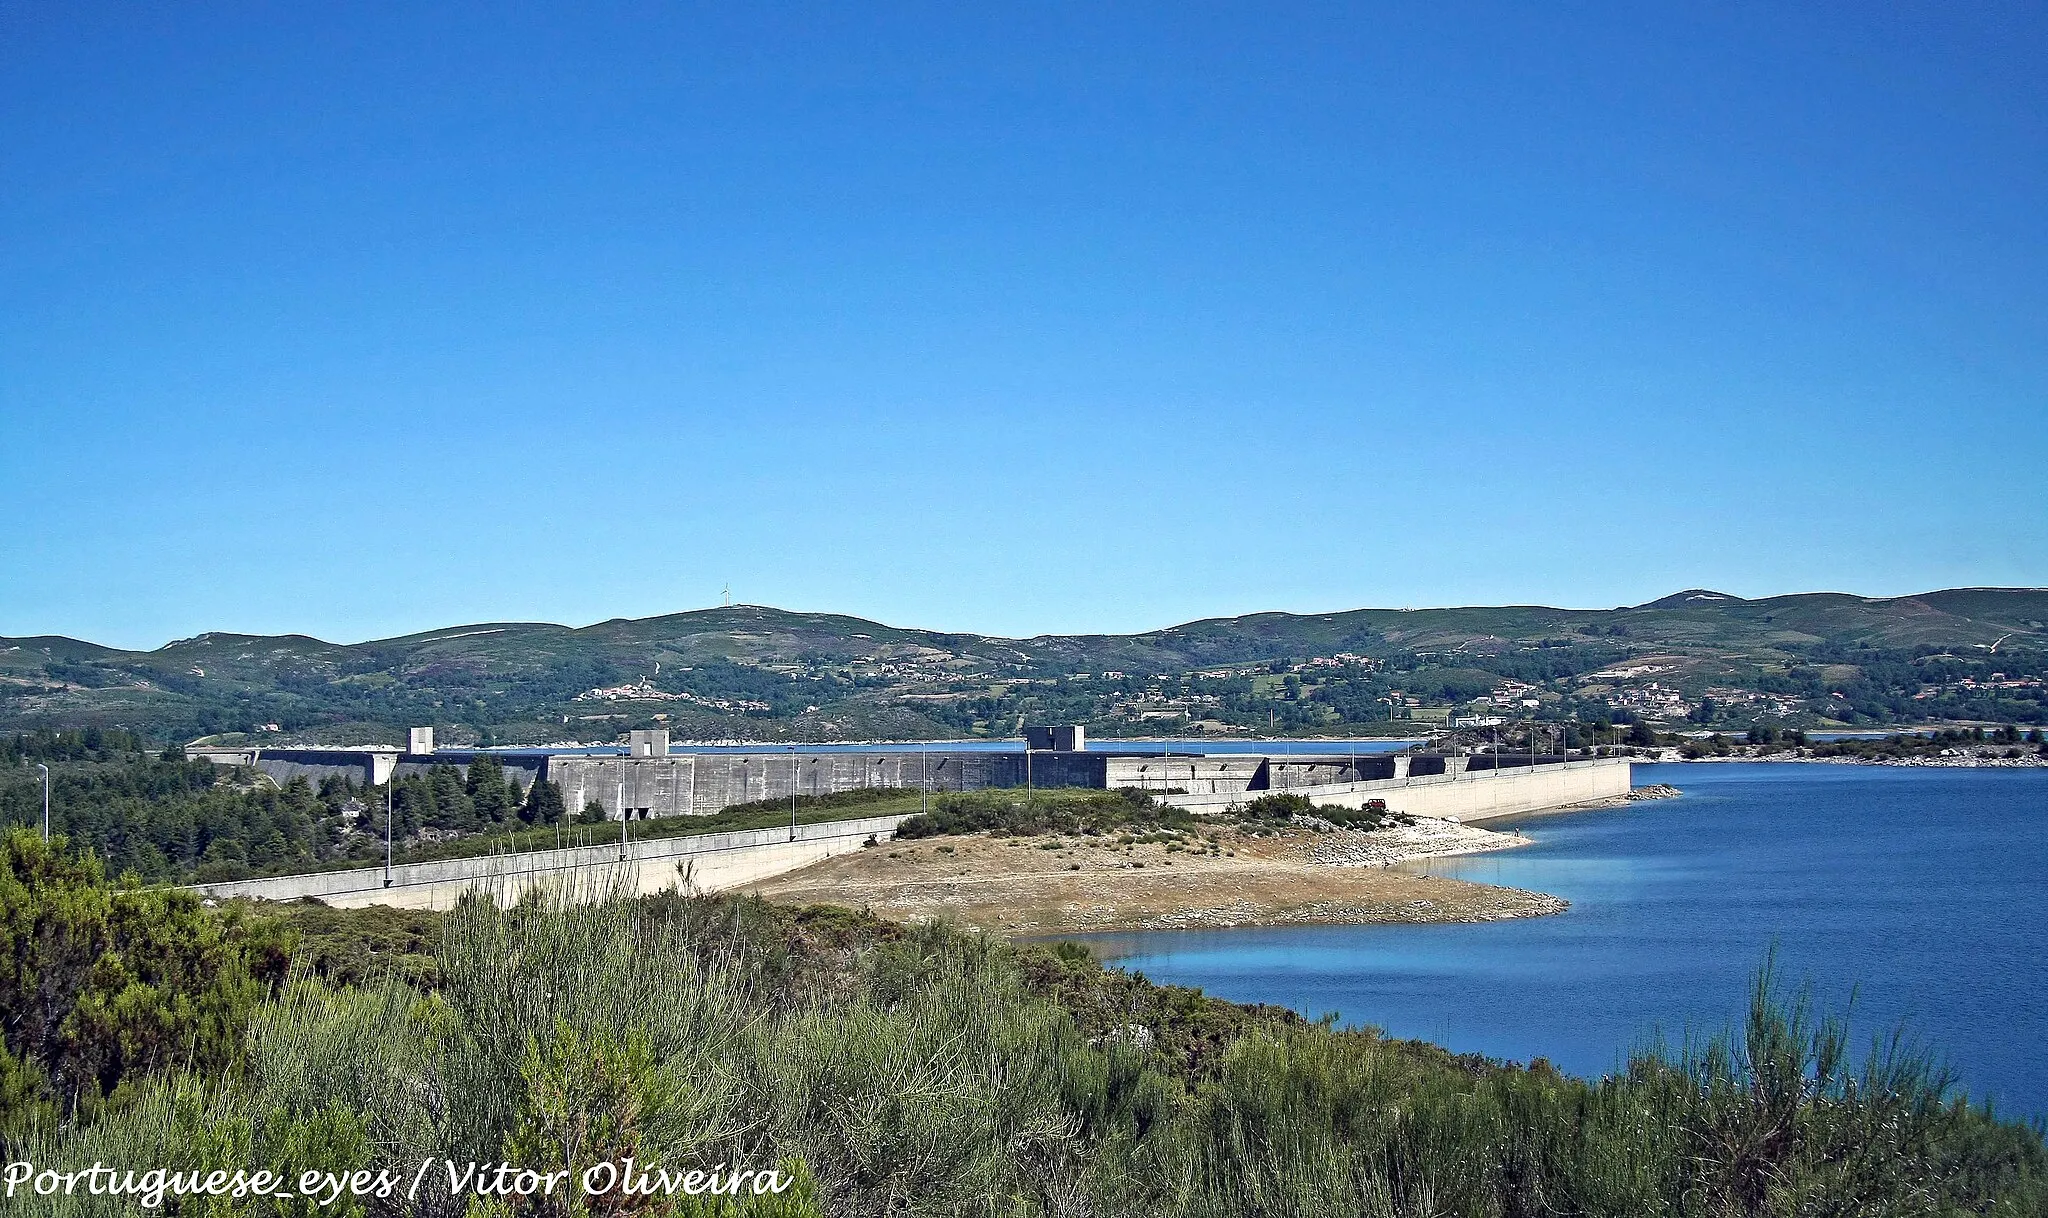 Photo showing: Também conhecida por Barragem dos Pisões, é a segunda maior barragem de Portugal, a seguir à de Alqueva. É alimentada pelo rio Rabagão, foi concluída em 1964, têm uma altura de 94m e um comprimento de coroamento de 1.897 metros, tem uma capacidade de descarga máxima de 500 m³/s.
A sua albufeira possui uma área de cerca de 2.200 hectares e uma capacidade de 569 hm3, com um volume morto (não utilizável) de 10,77 hm³.
www.portugal-imagens.blogspot.com/

See where this picture was taken. [?]